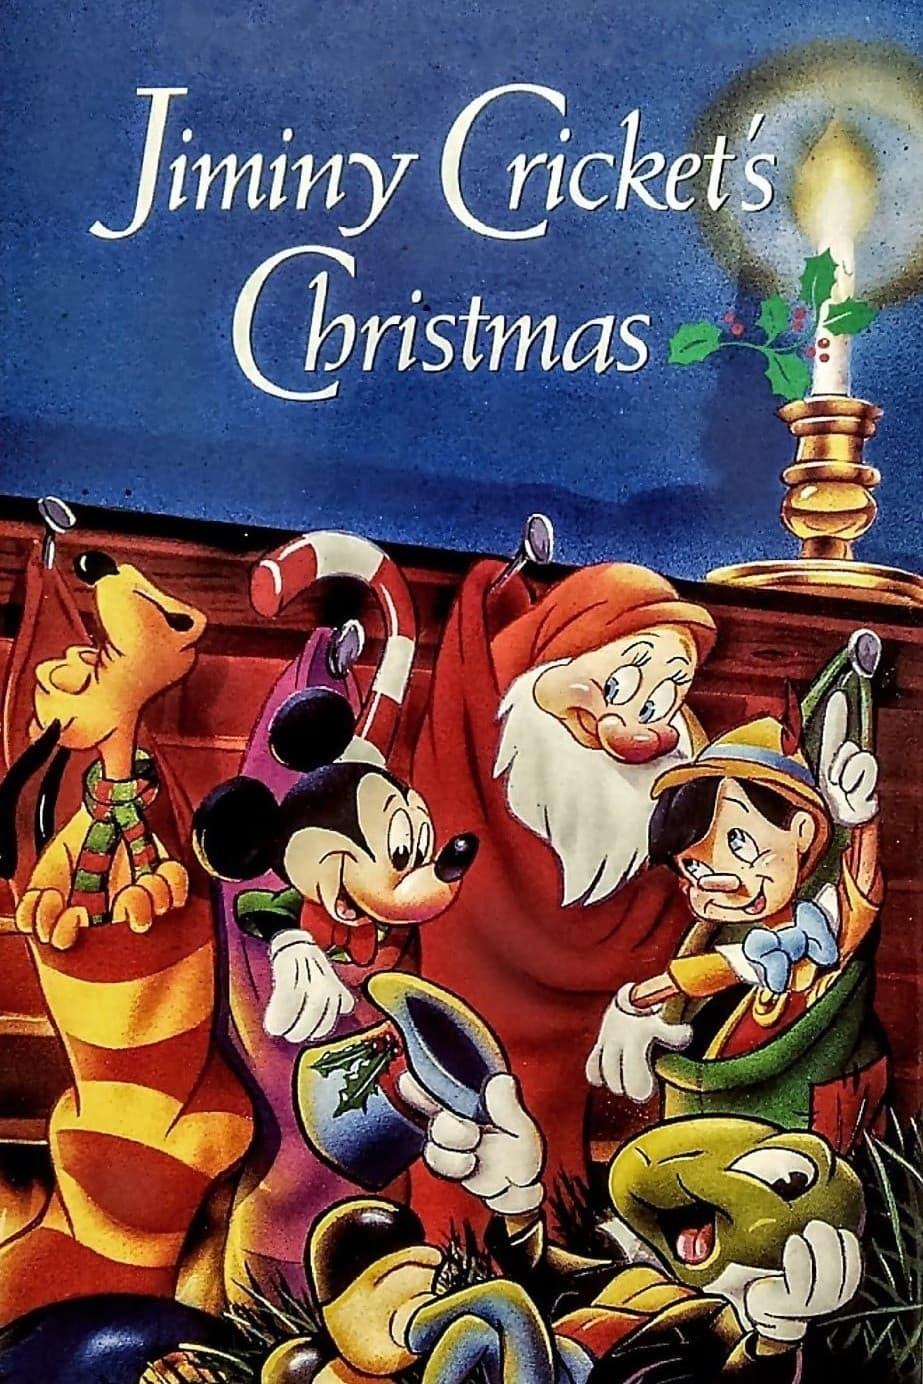 Jiminy Cricket's Christmas poster